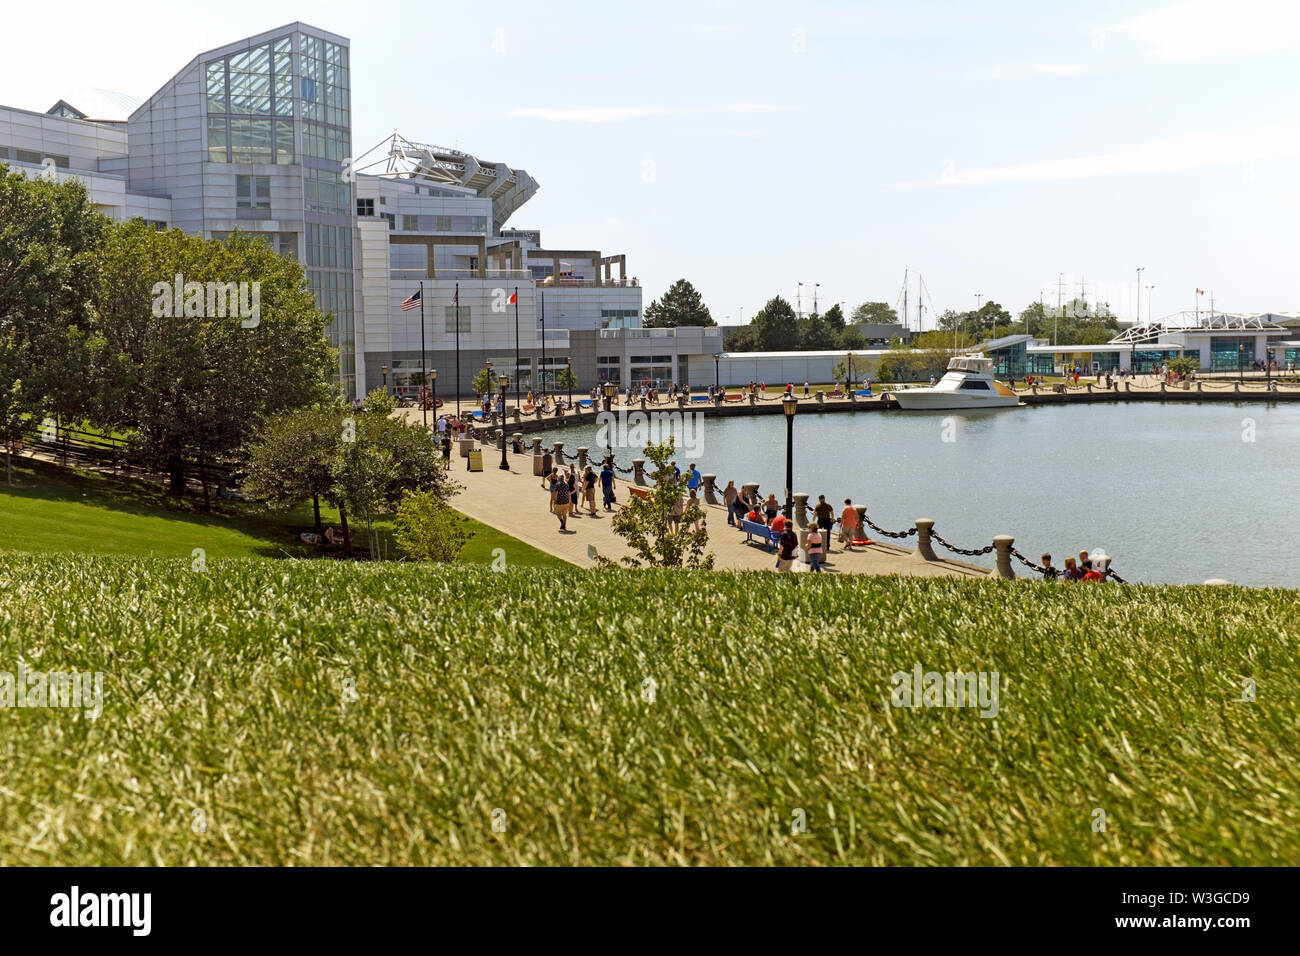 Il lungomare di Cleveland nel porto di Northcoast presenta una famosa passeggiata che collega le principali attrazioni, lo spazio verde e il lungolago. Foto Stock